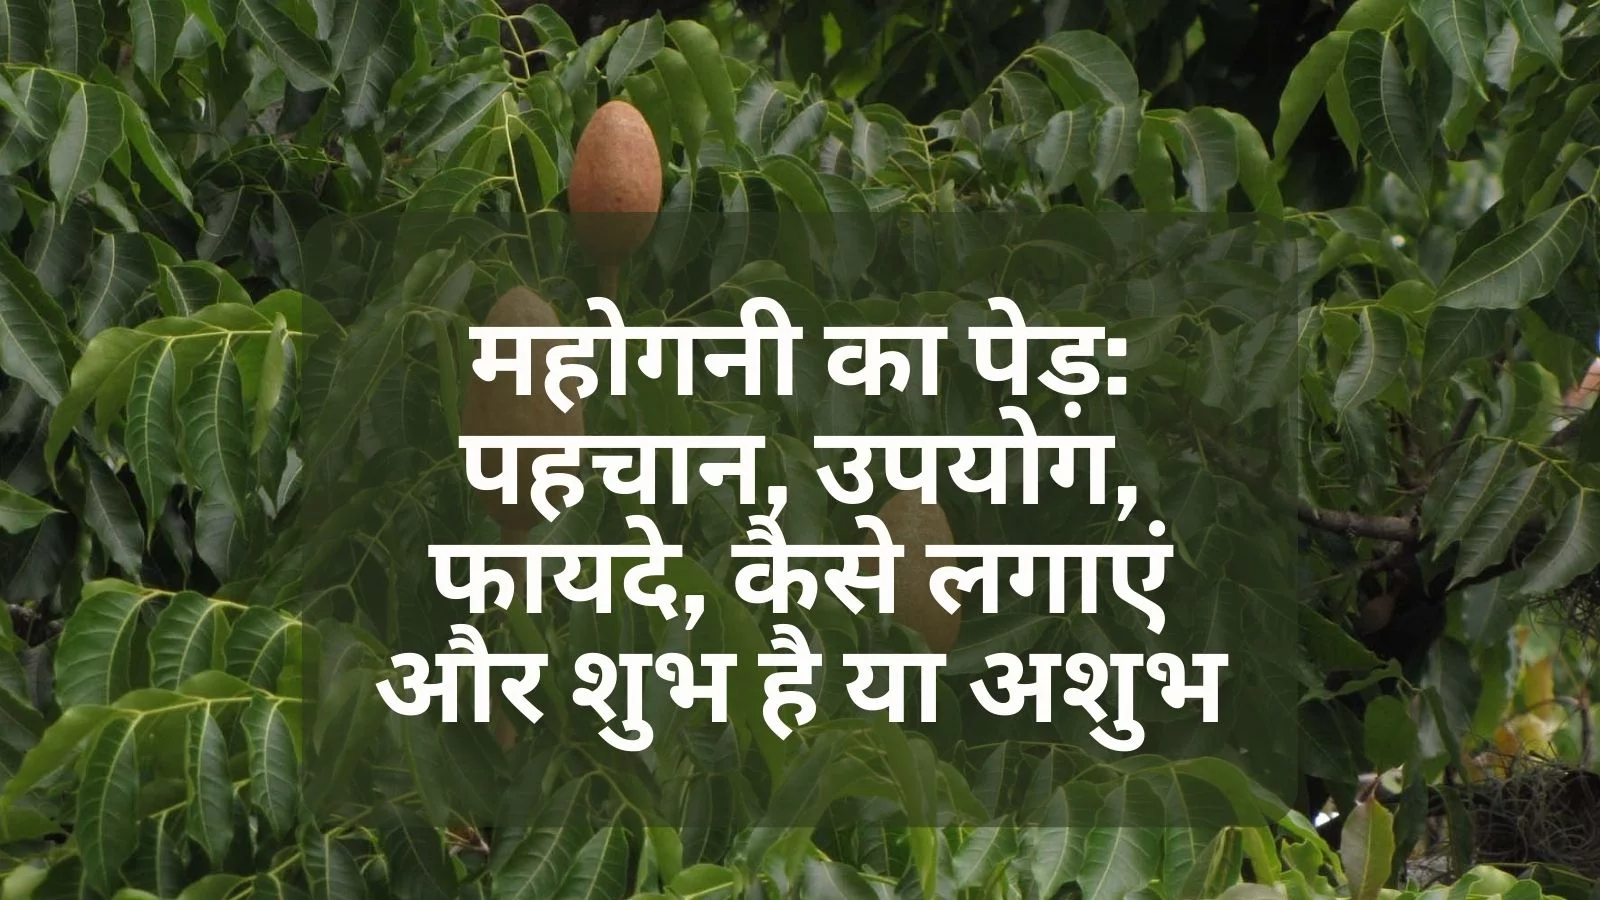 Mahogany tree in hindi